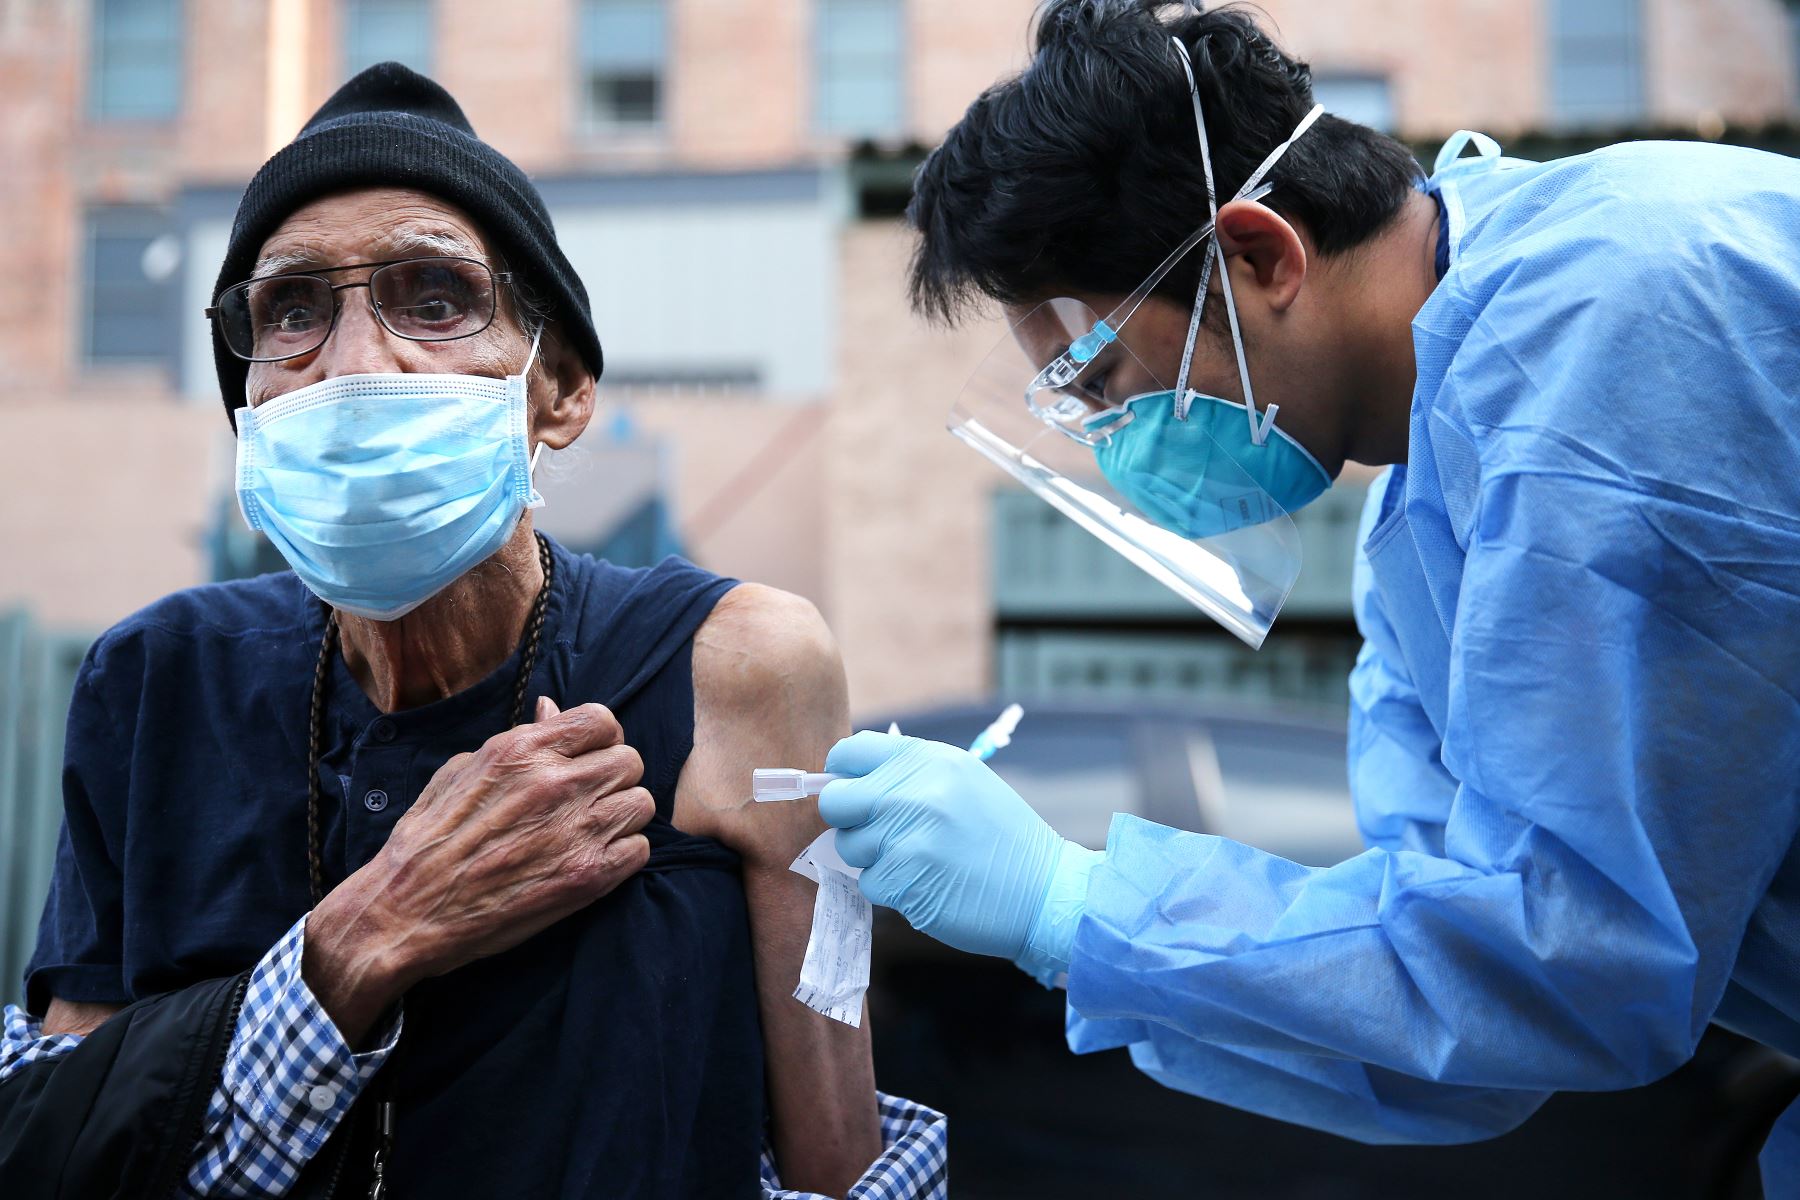 Eduardo Chavira recibe una tirita después de que un trabajador de la salud le administrara una dosis de la vacuna Moderna COVID-19 fuera de la Misión de Los Ángeles ubicada en la comunidad de Skid Row, en Estados Unidos. Foto: AFP